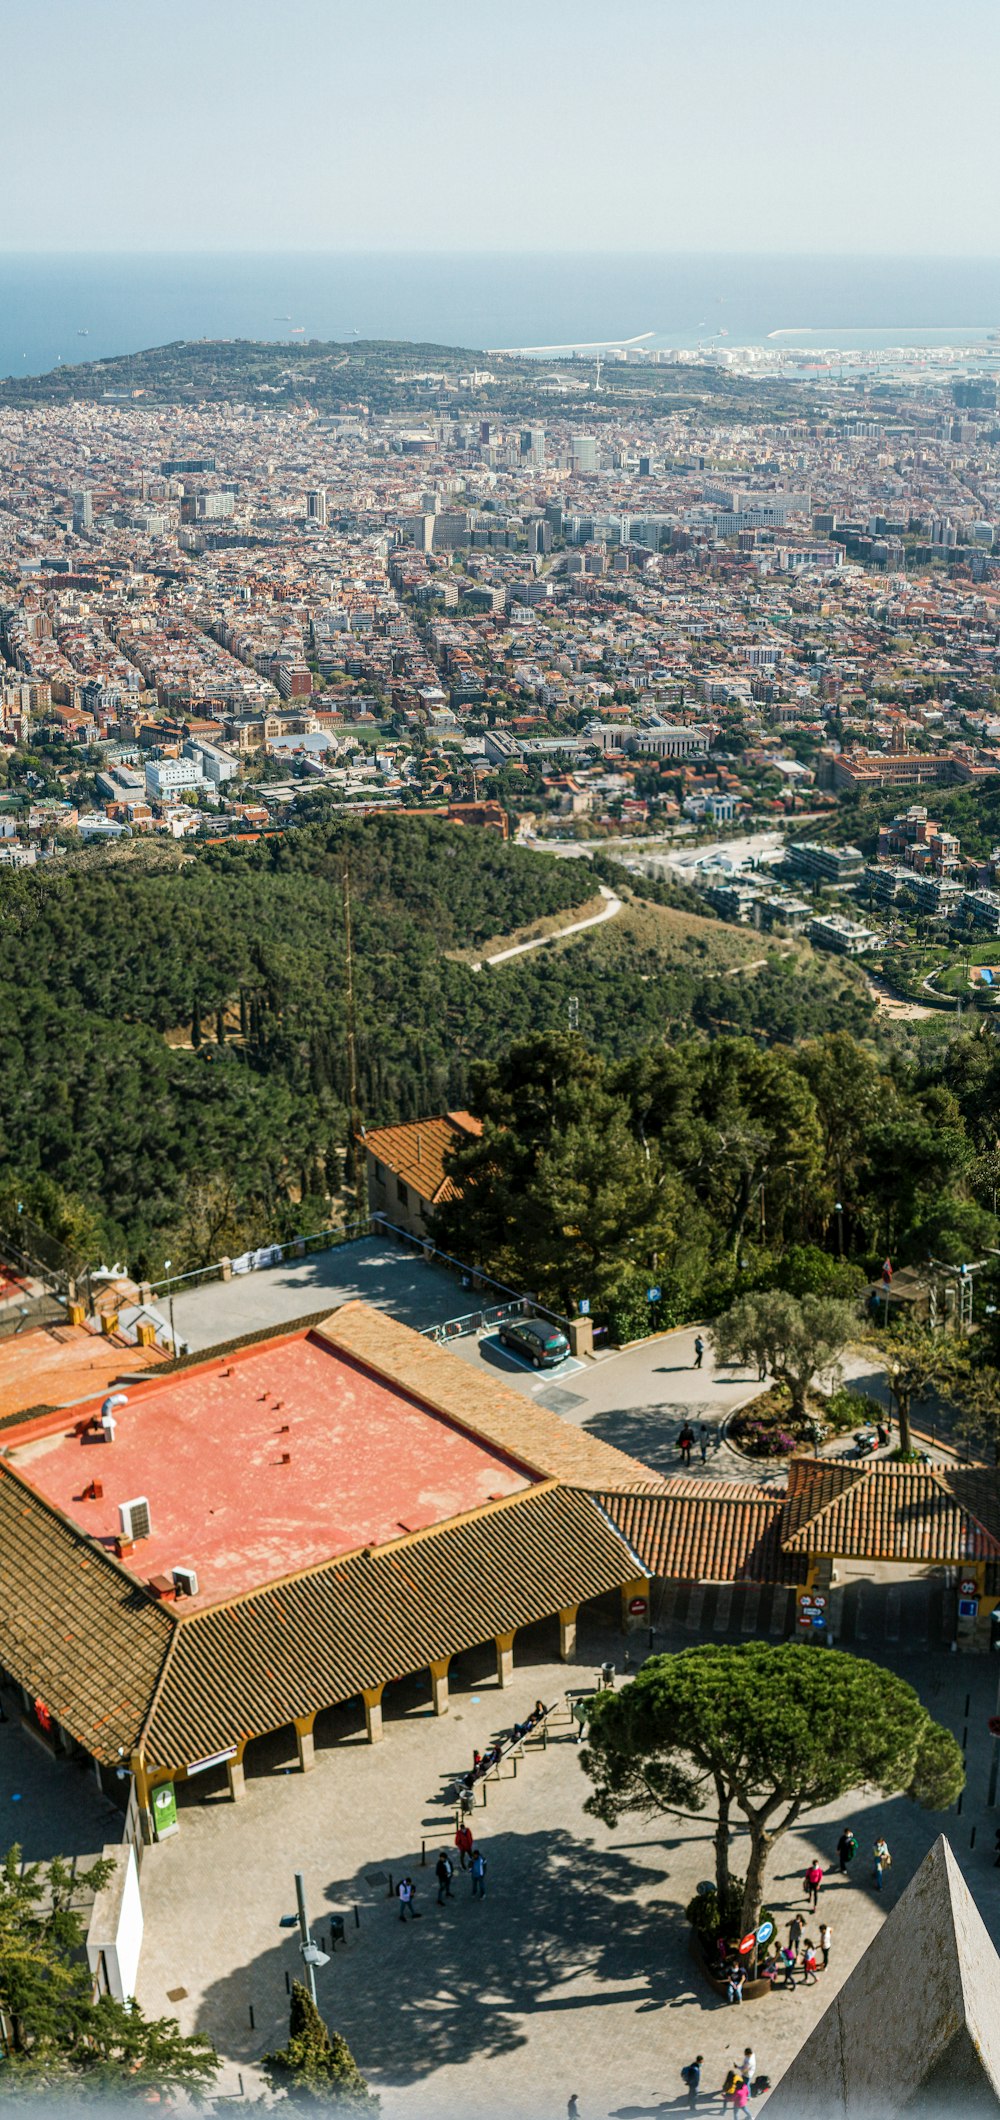 Vista aérea de árboles verdes y casas durante el día